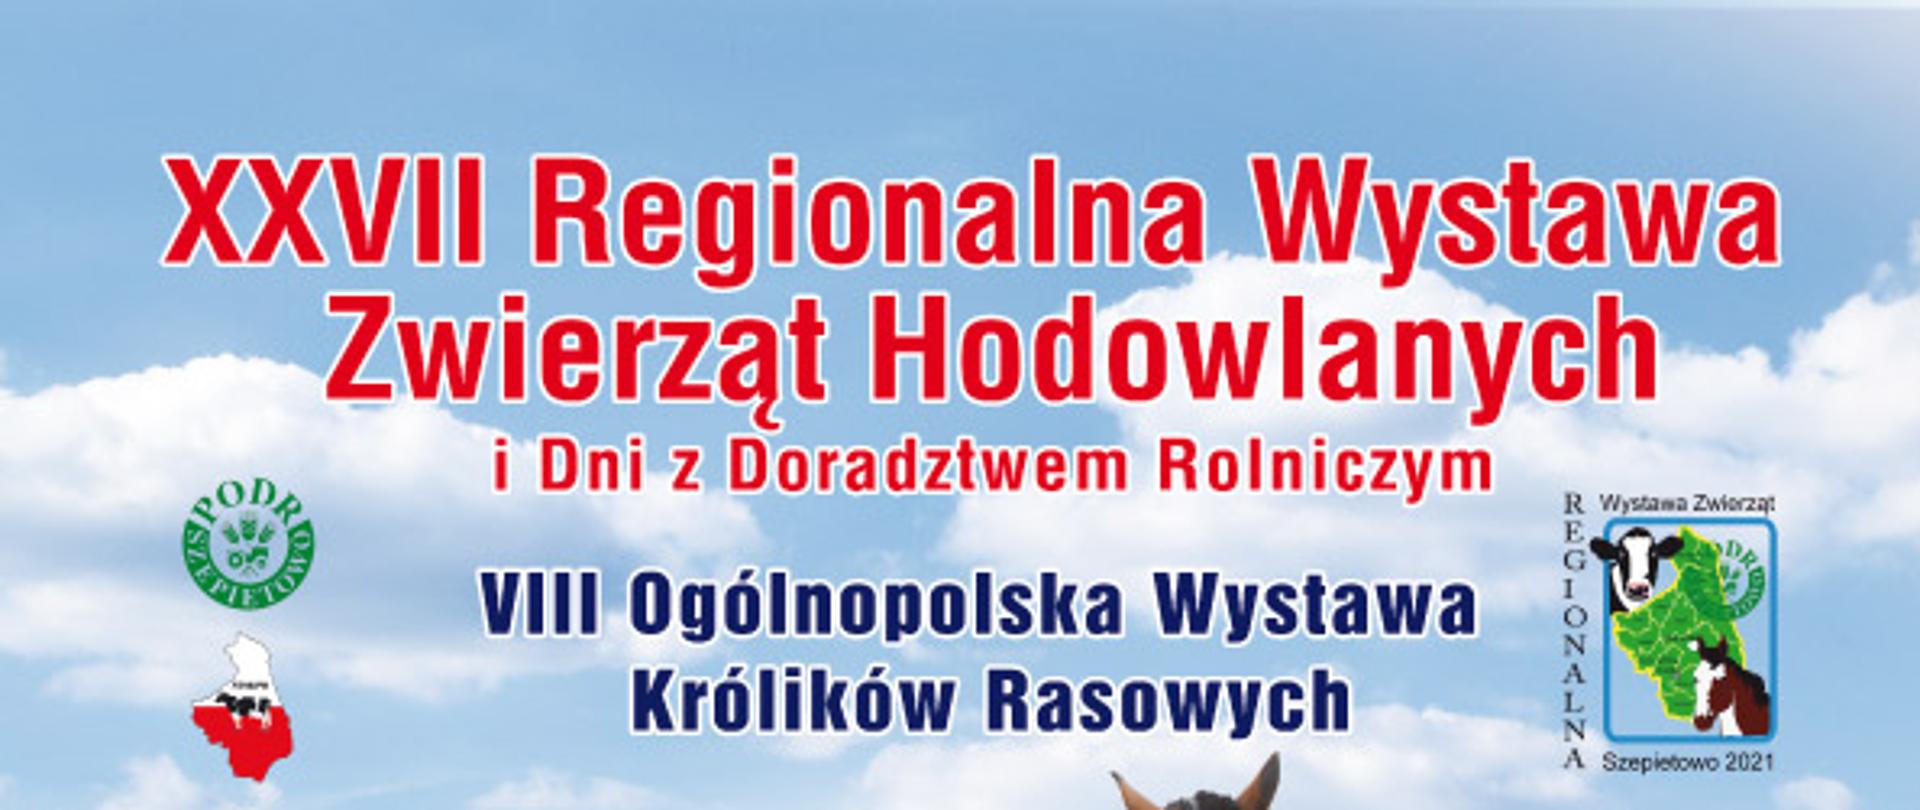 Plakat Regionalna Wystawa Zwierząt Hodowlanych i Dni z Doradztwem Rolniczym 2021